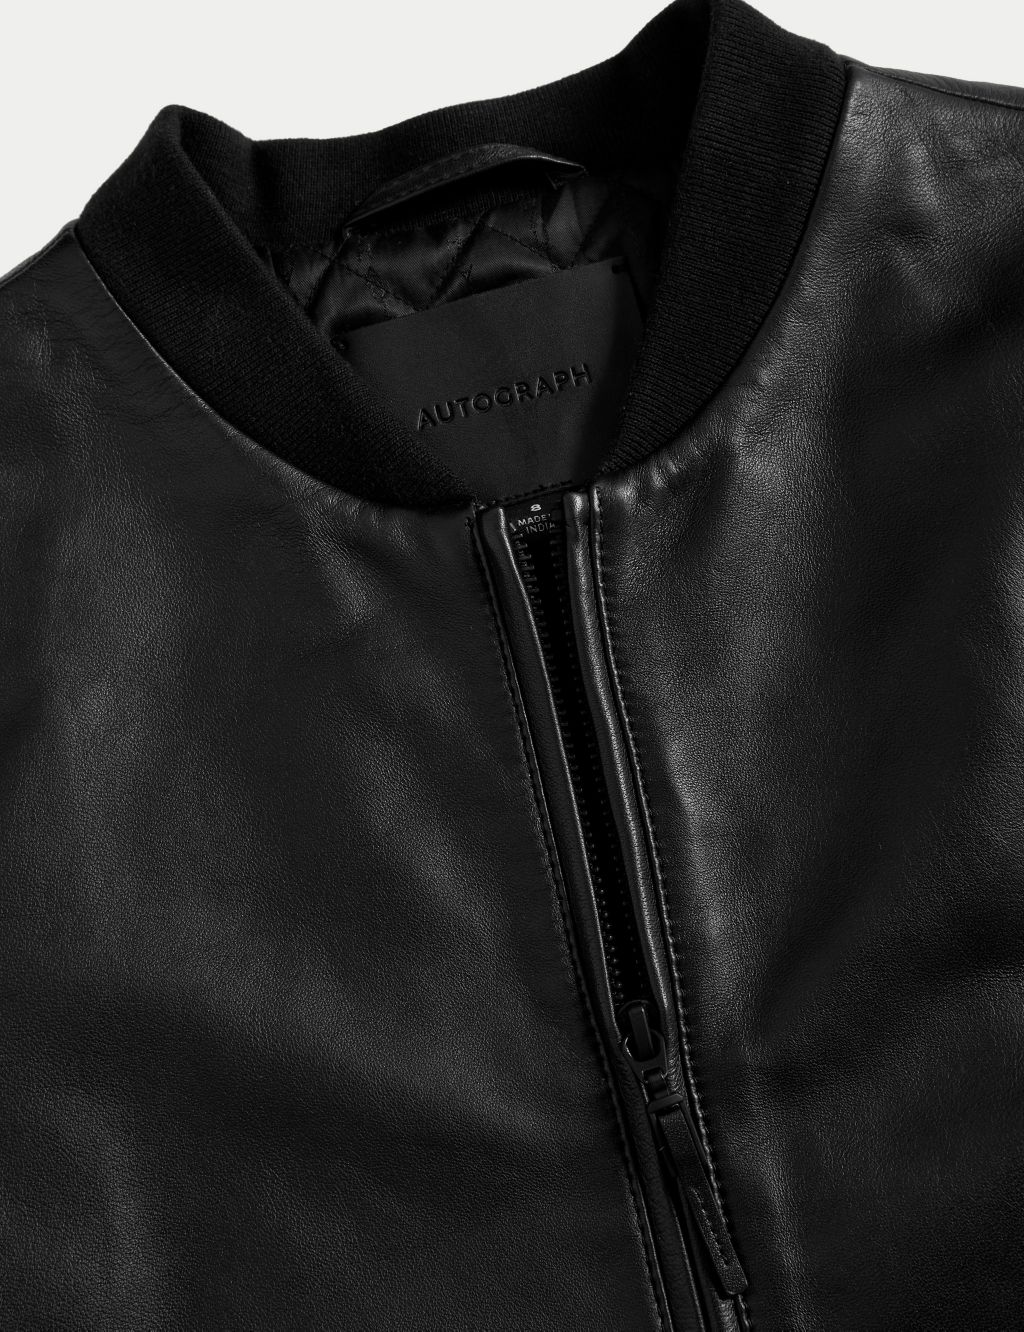 Leather Bomber Jacket image 6